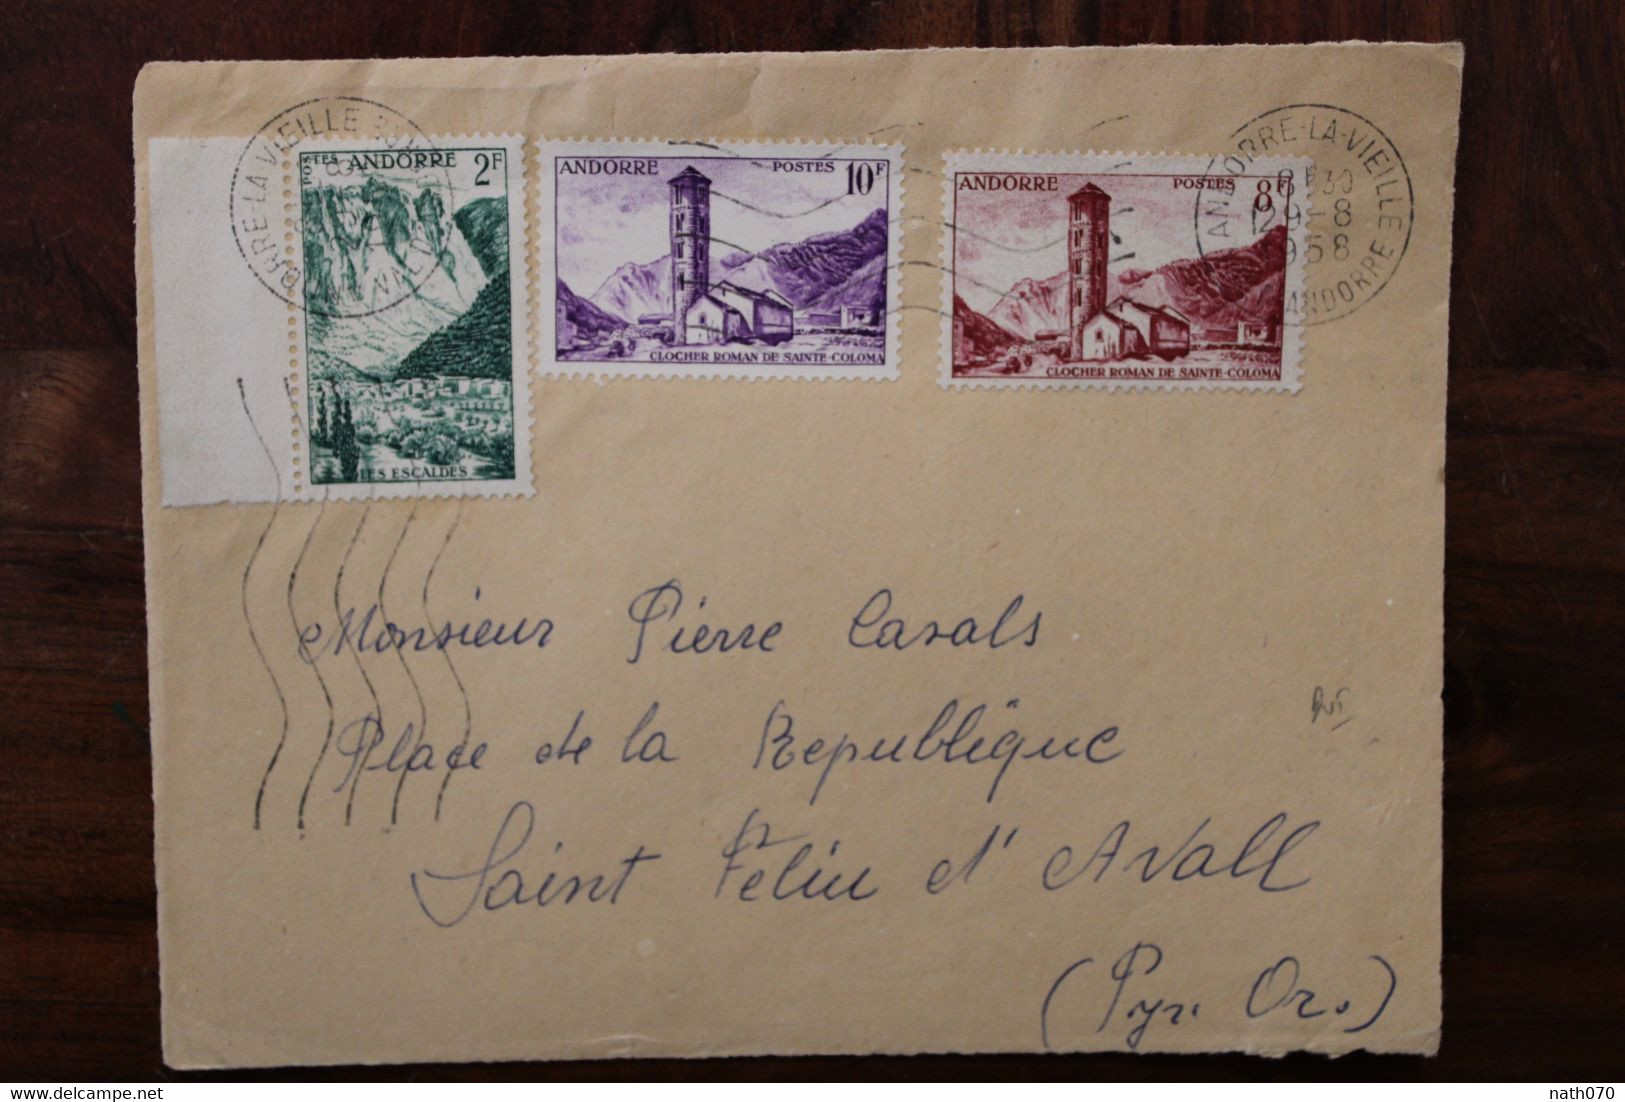 1958 Andorre Front D'enveloppe Cover Les Escaldes Clocher Roman De Ste Coloma - Lettres & Documents